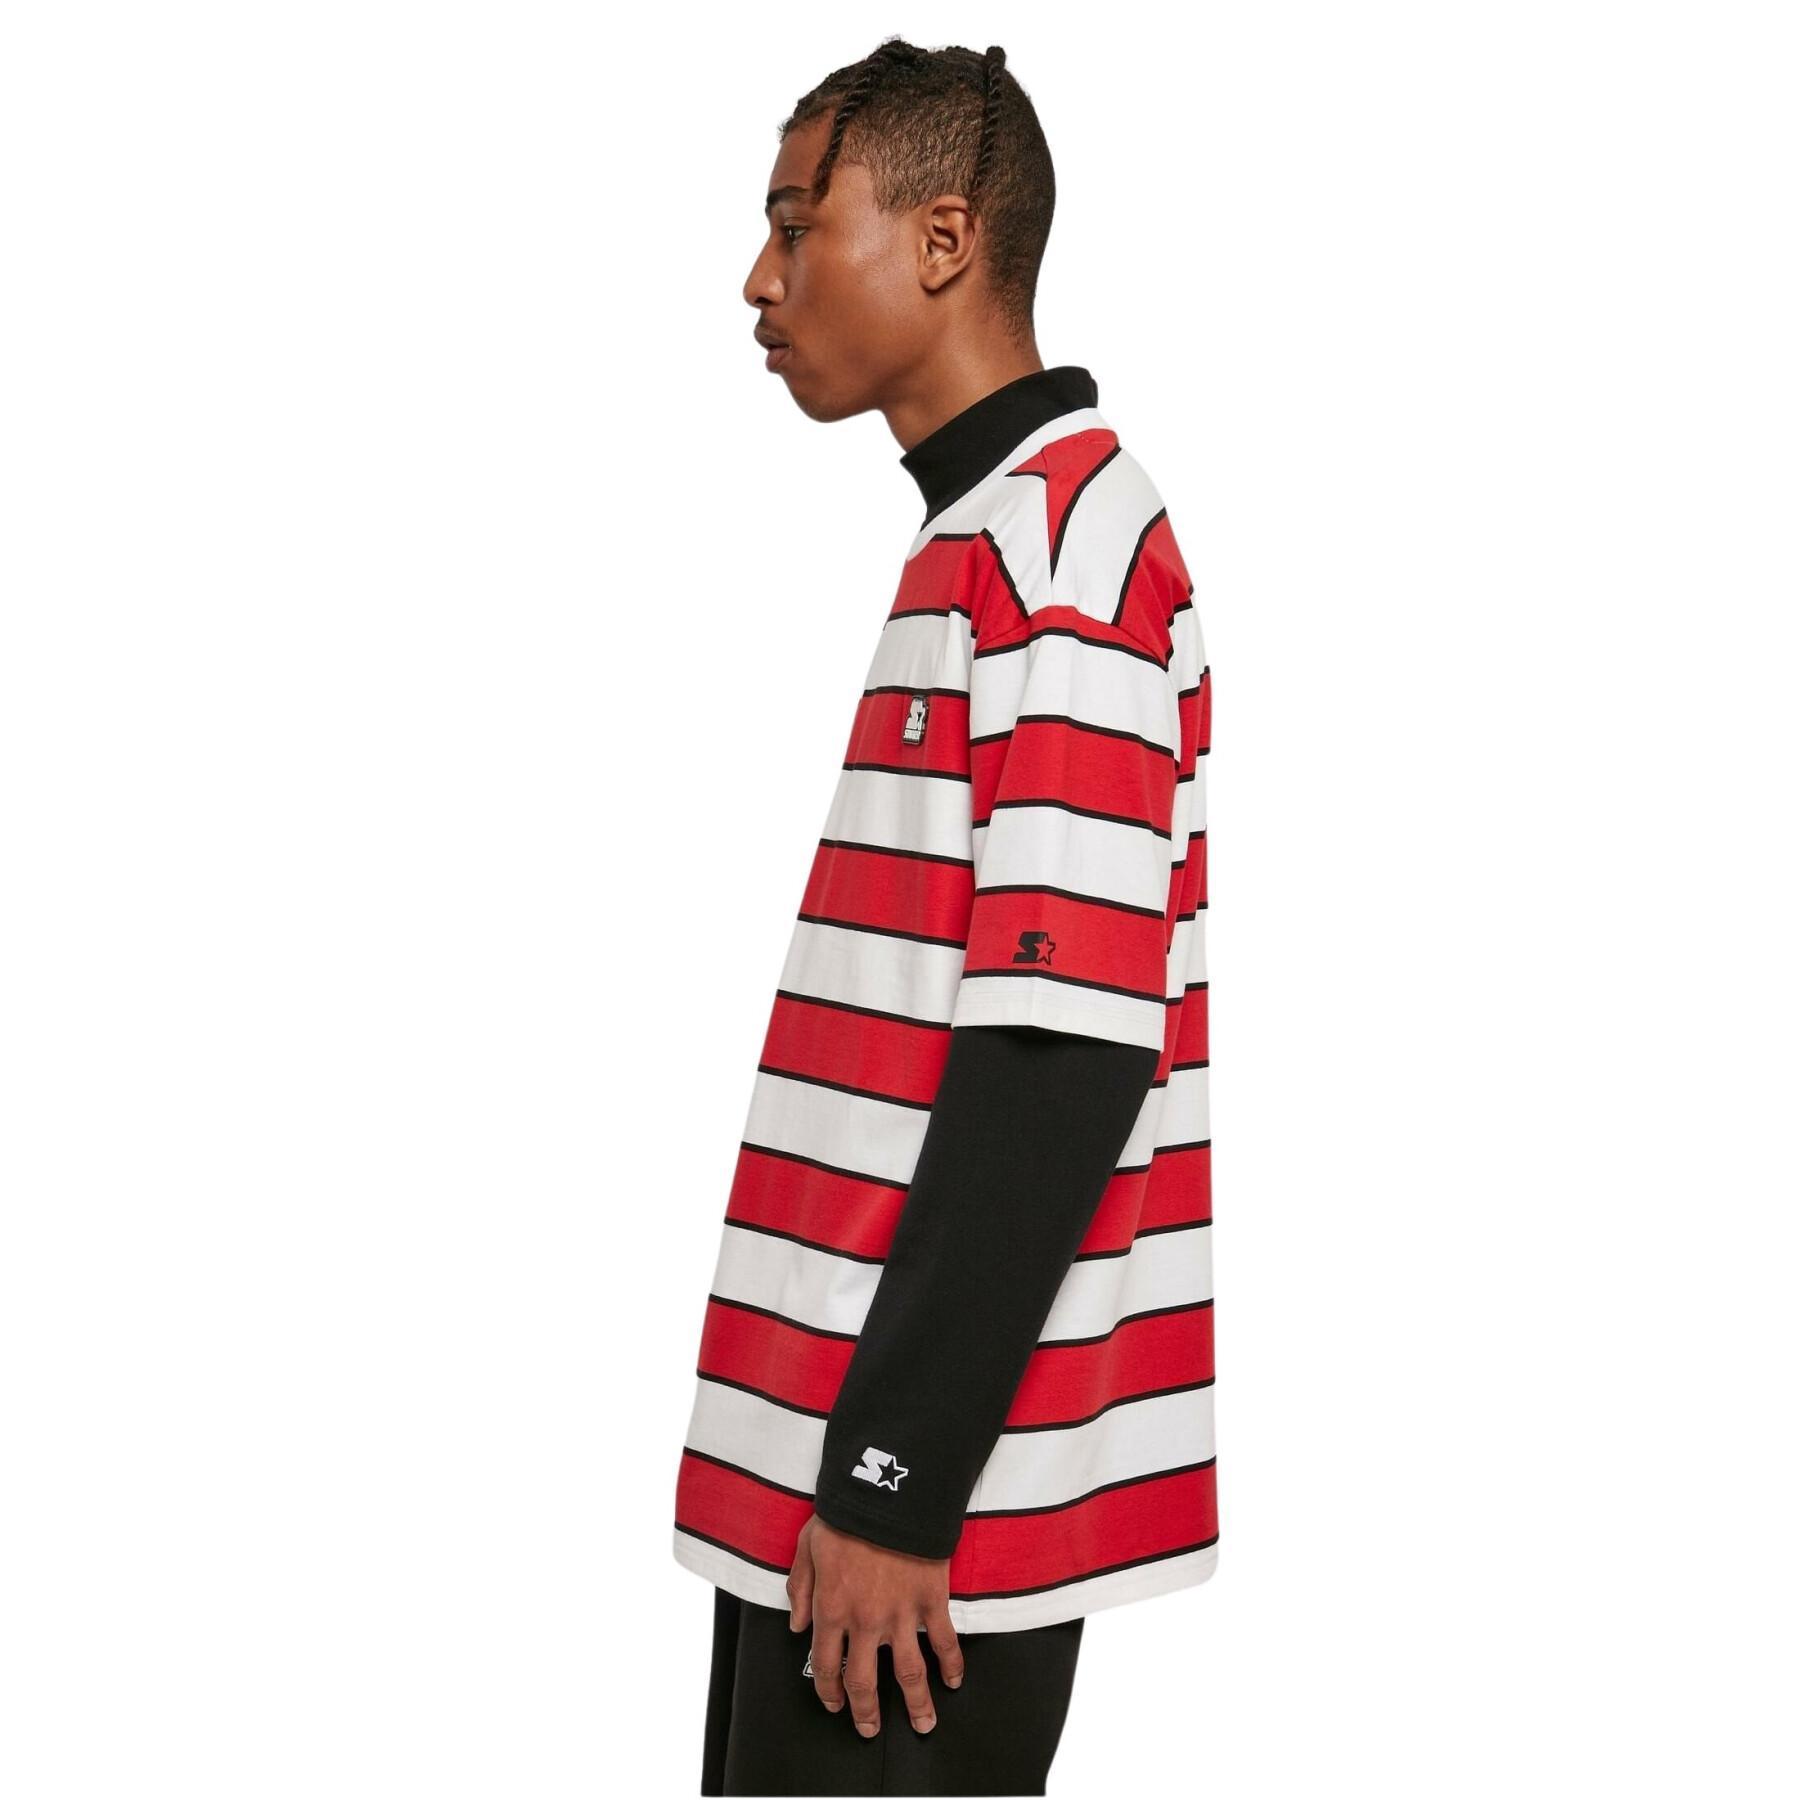 Striped T-shirt Urban Classics Starter Block